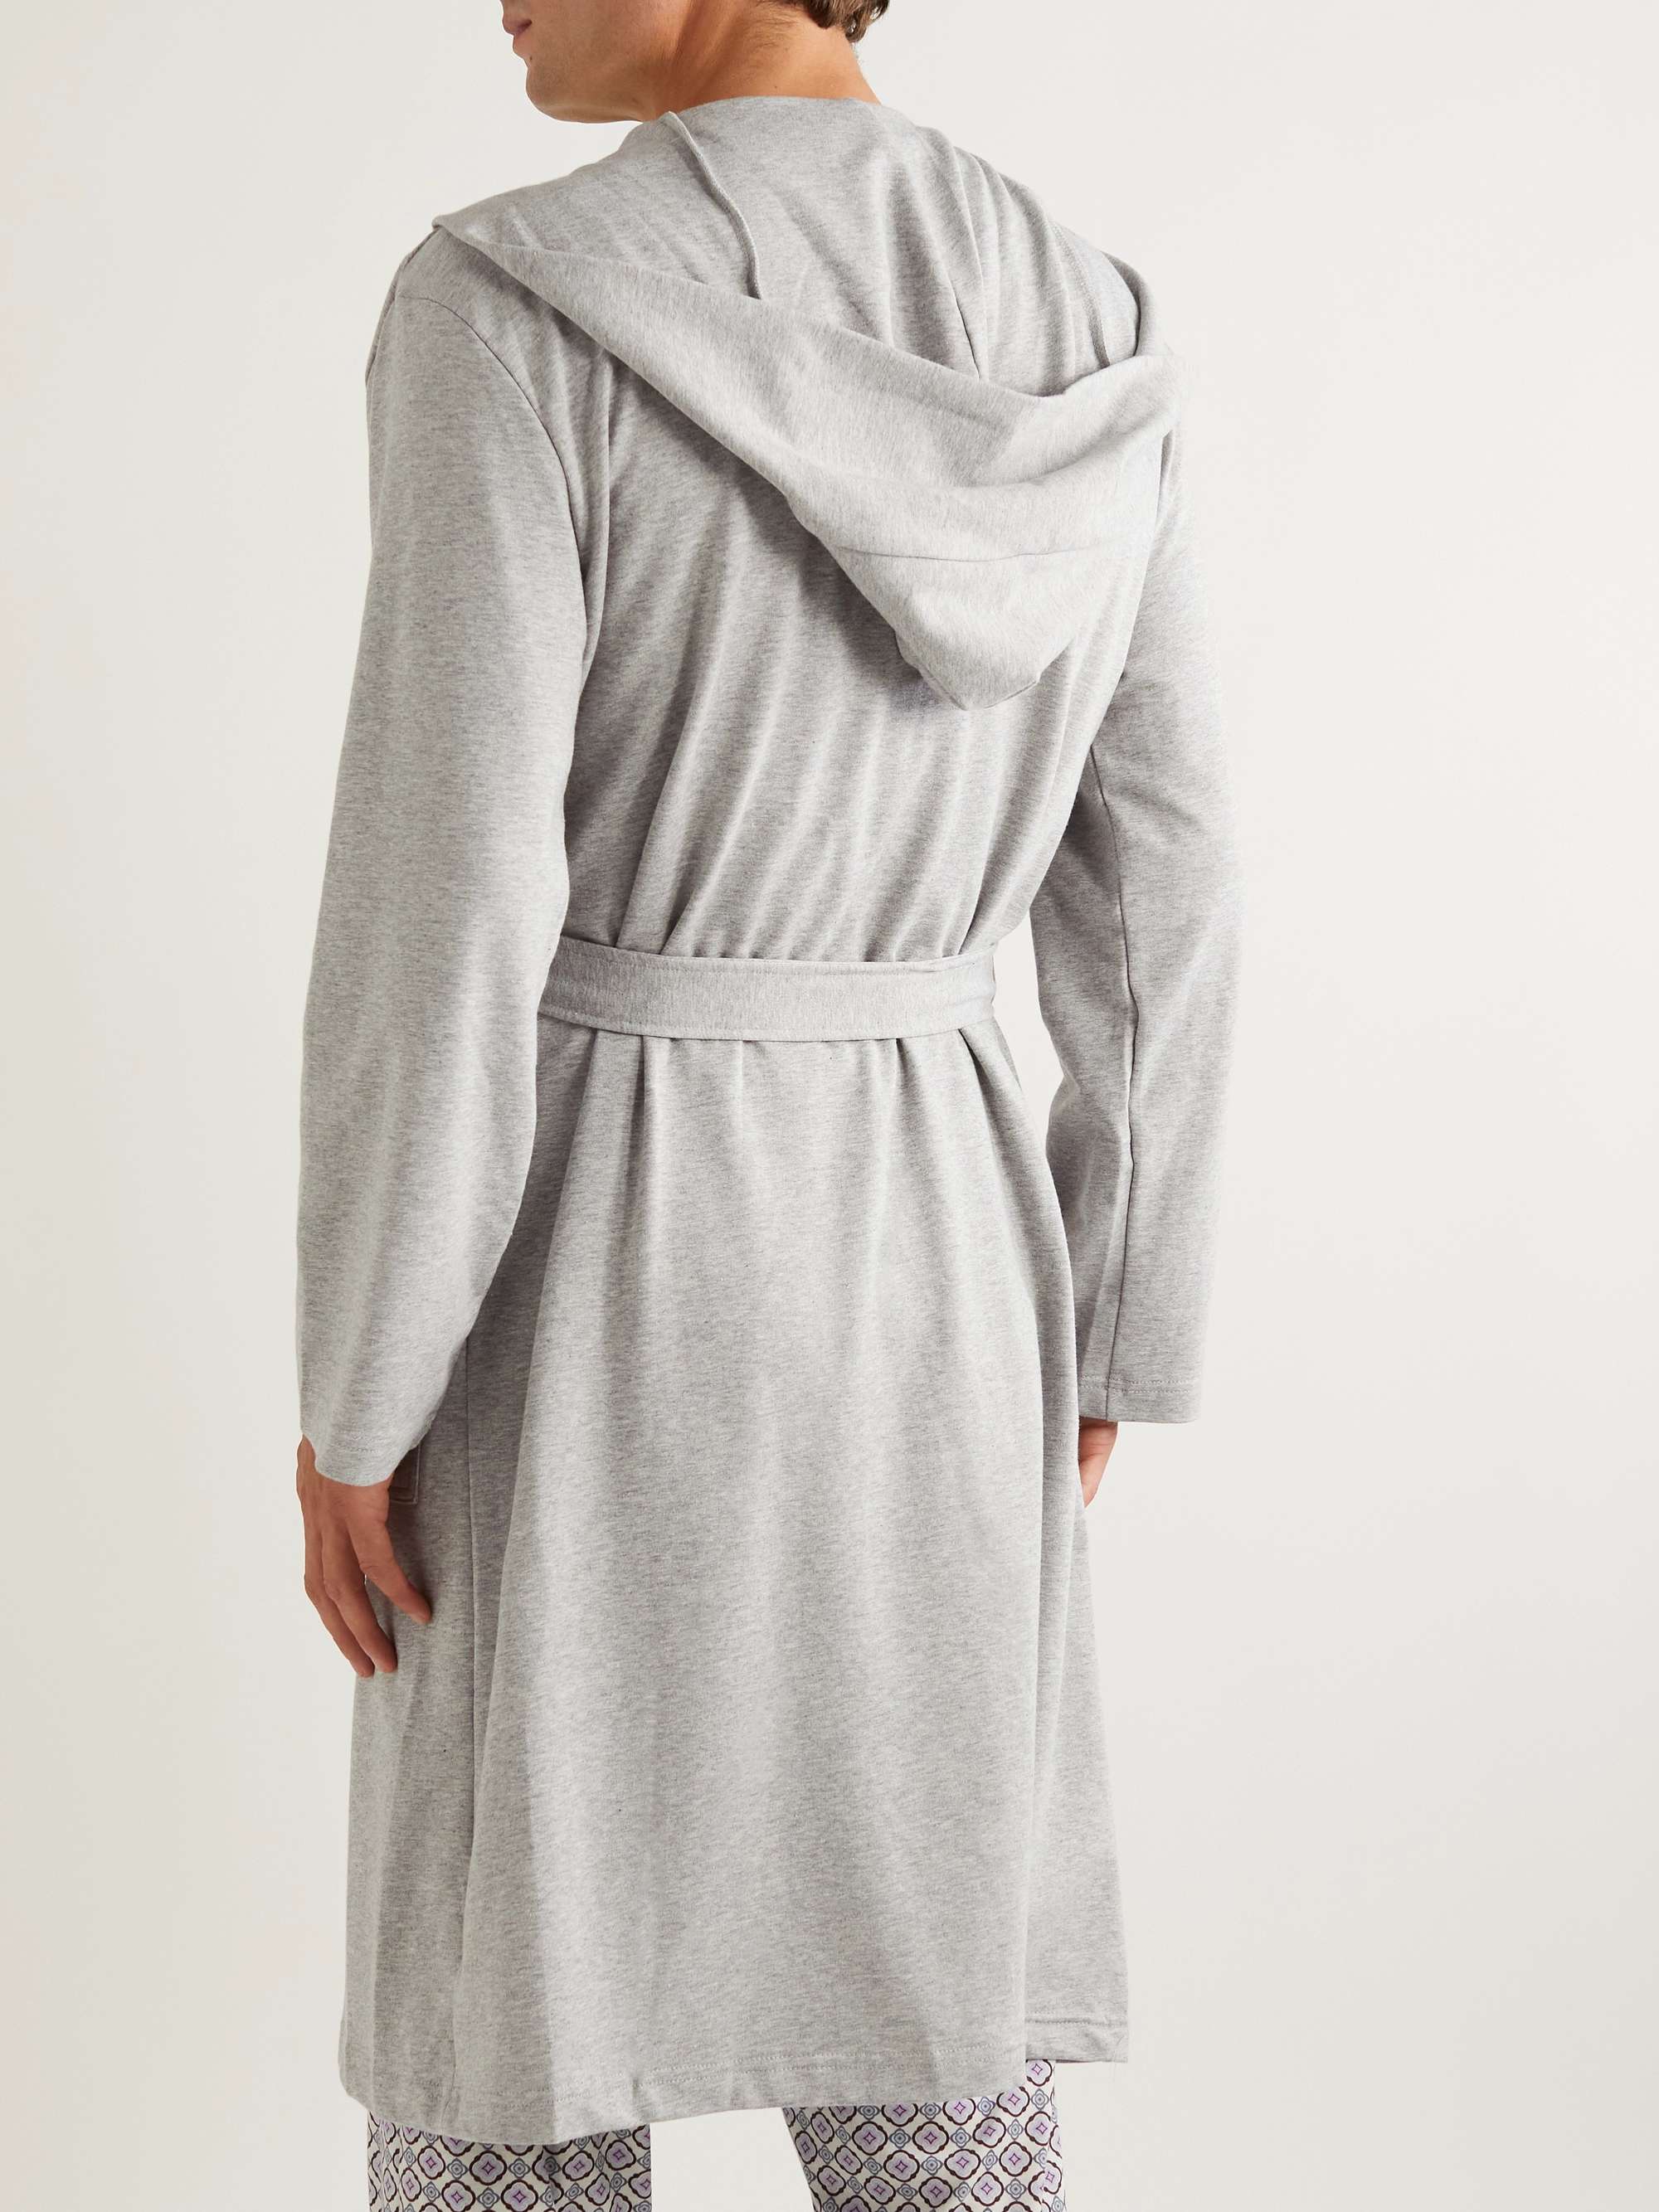 CALVIN KLEIN UNDERWEAR Logo-Embroidered Cotton-Blend Jersey Hooded Robe